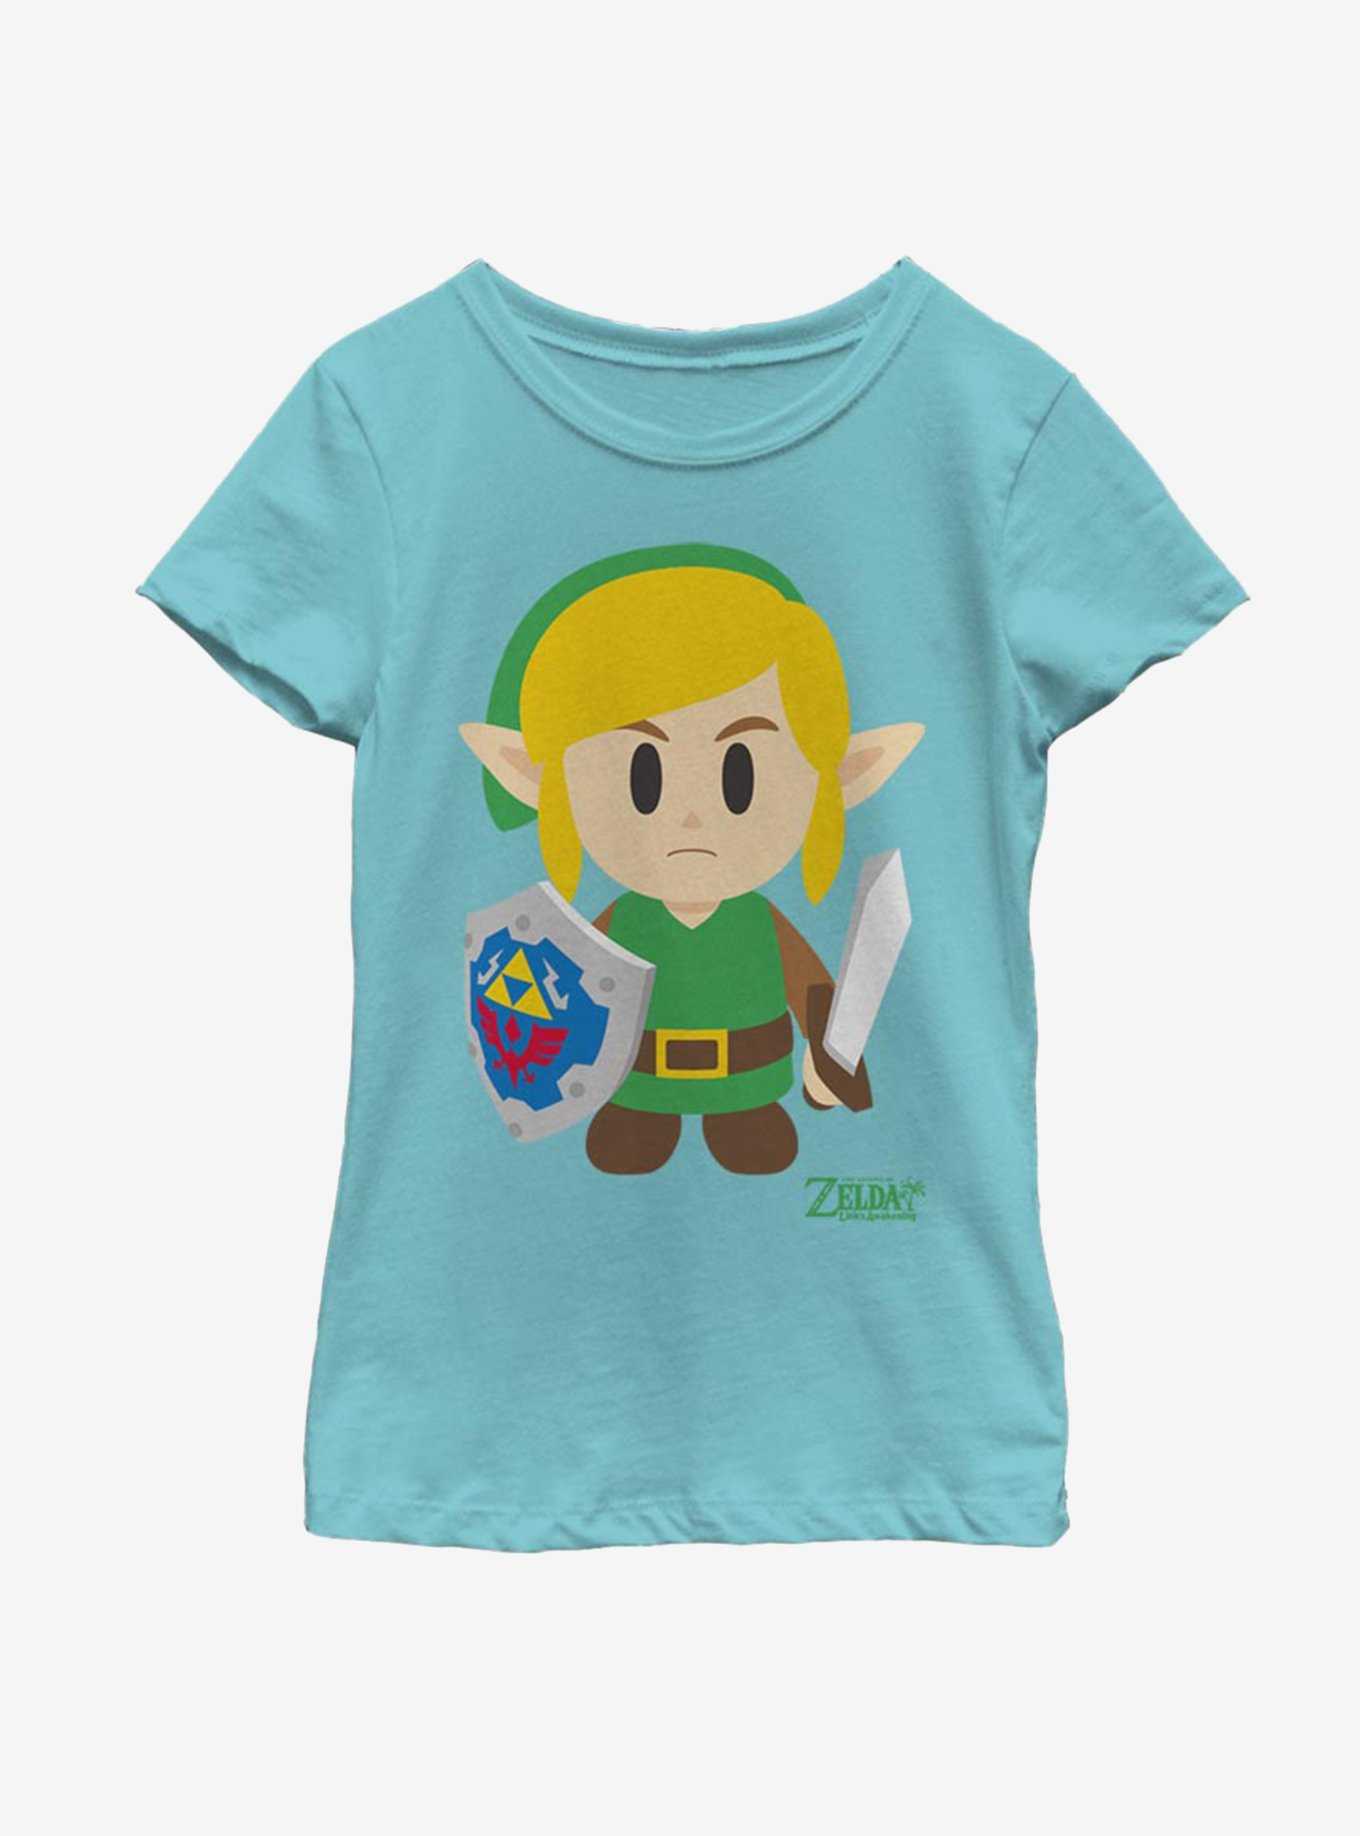 Nintendo The Legend of Zelda: Link's Awakening Link Avatar Color Youth Girls T-Shirt, , hi-res